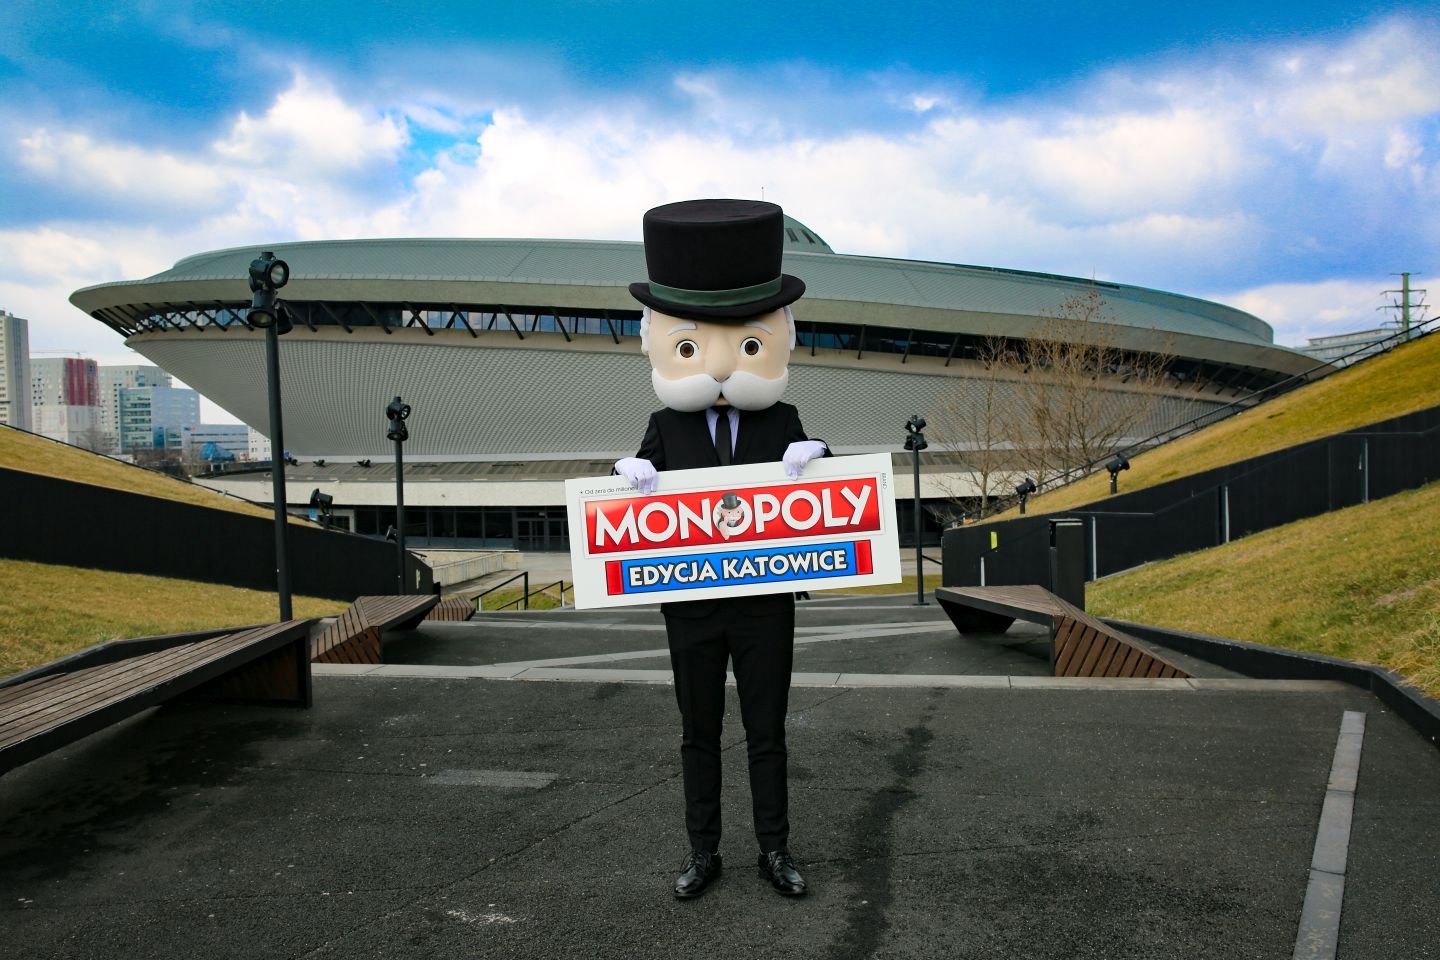 Pan Monopoly